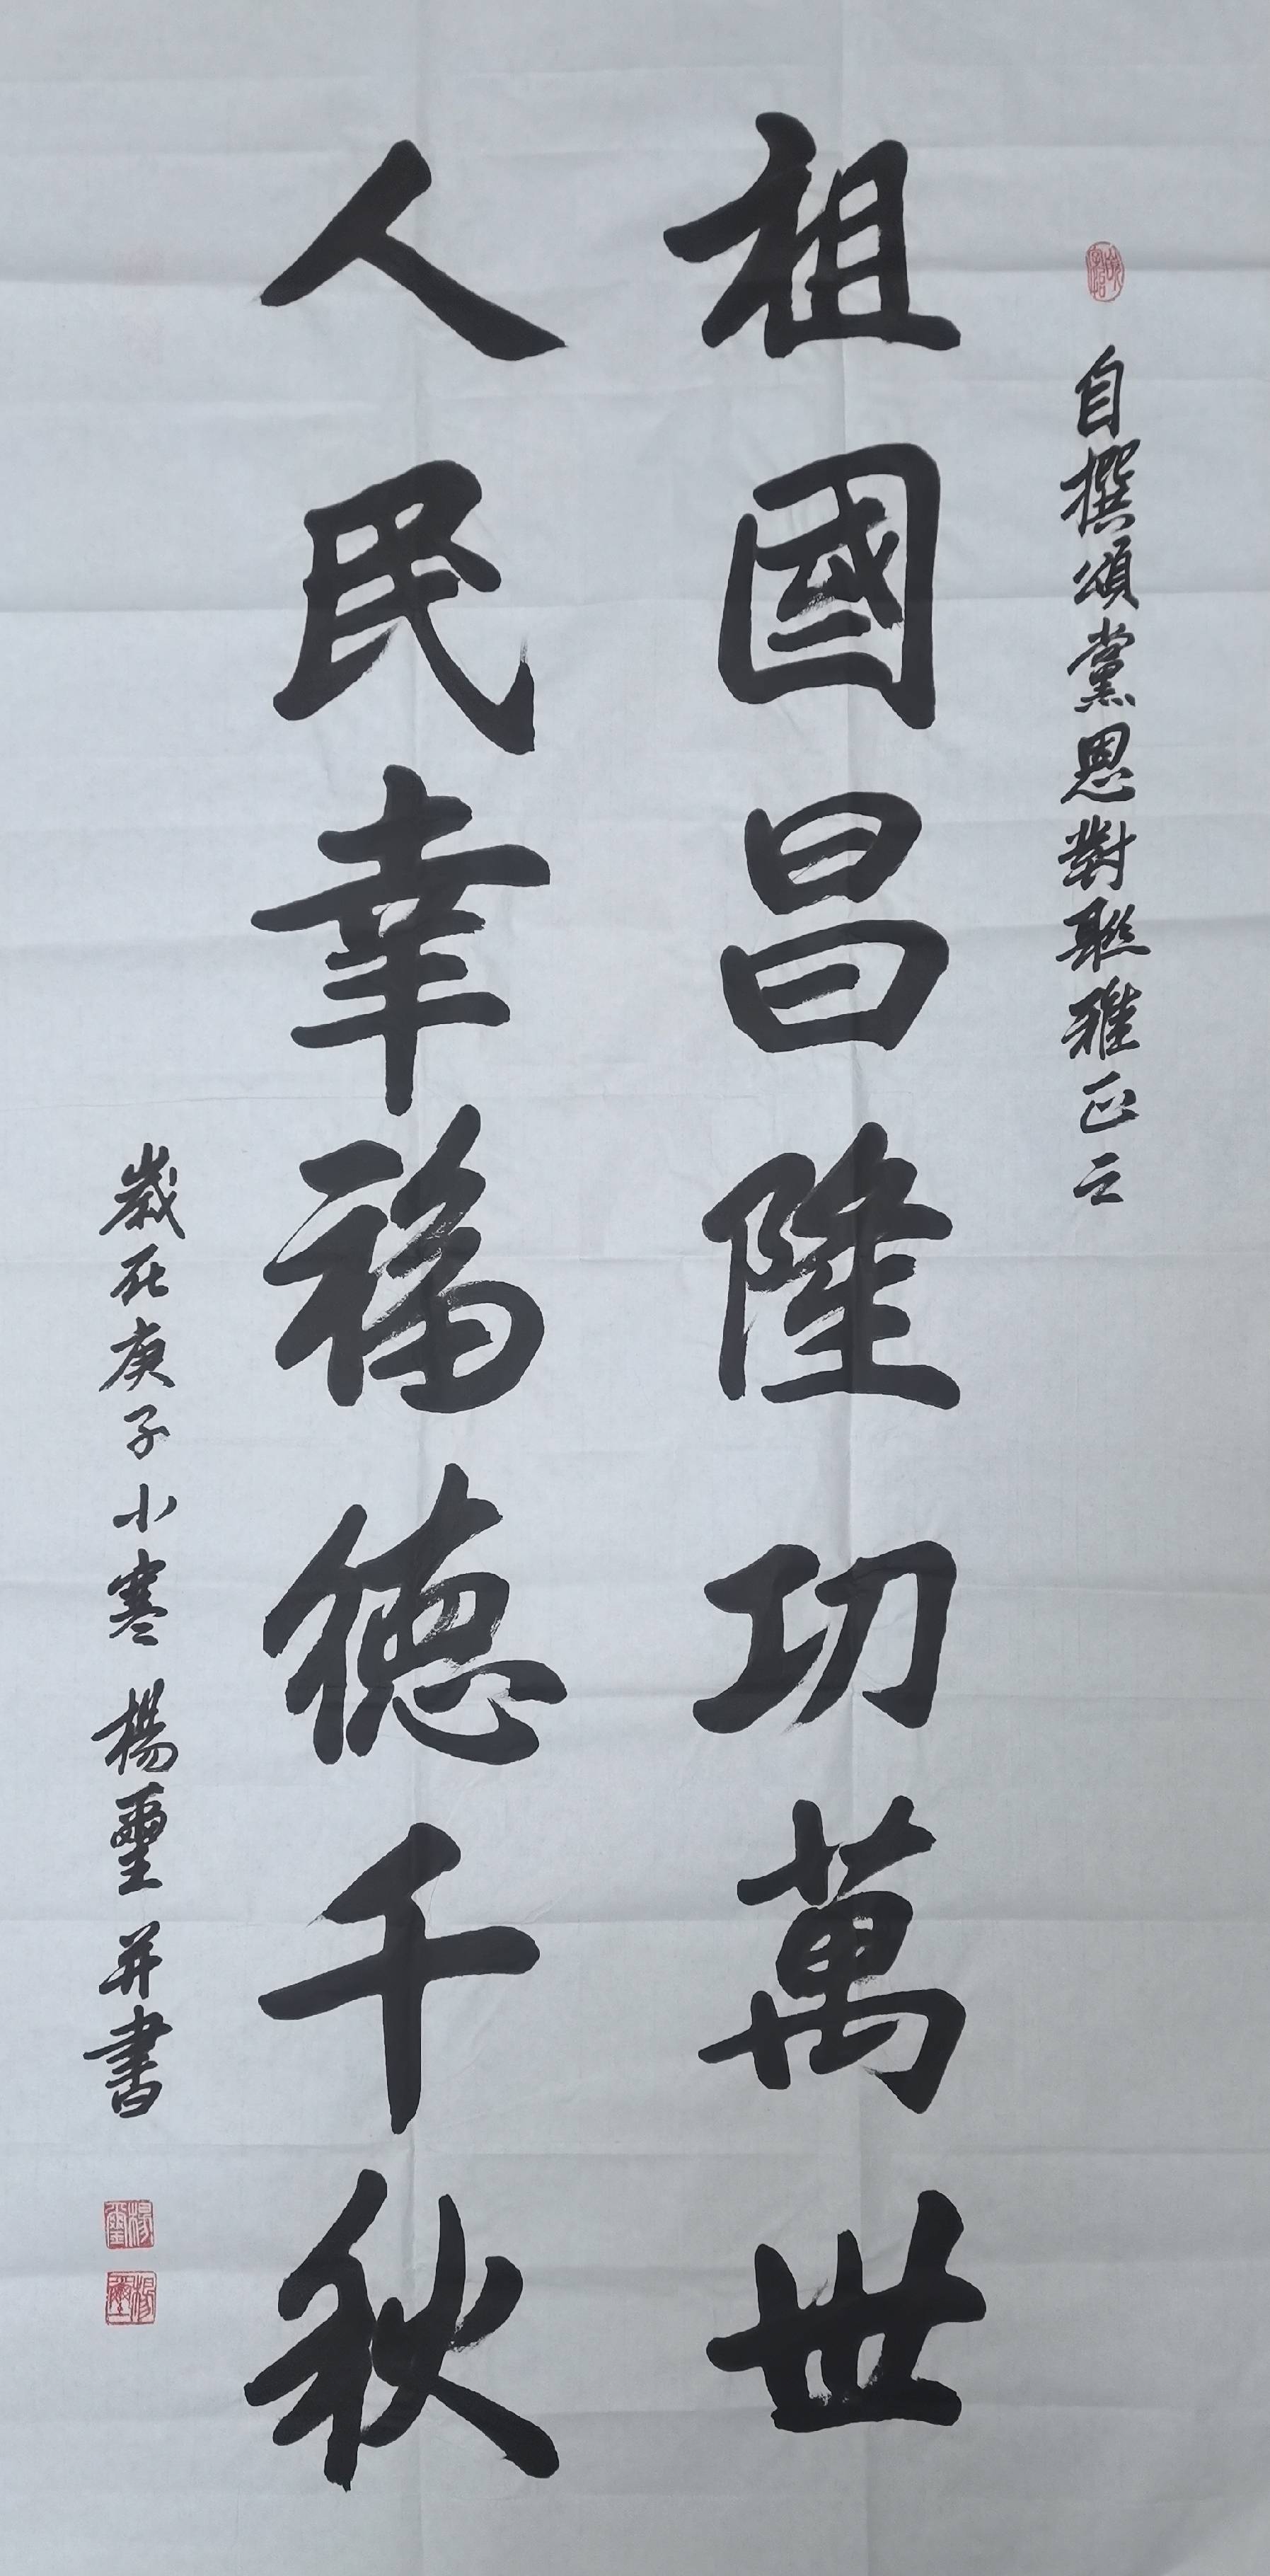 223,姓名:杨玺,作品:软笔书法,区域:内蒙古自治区.